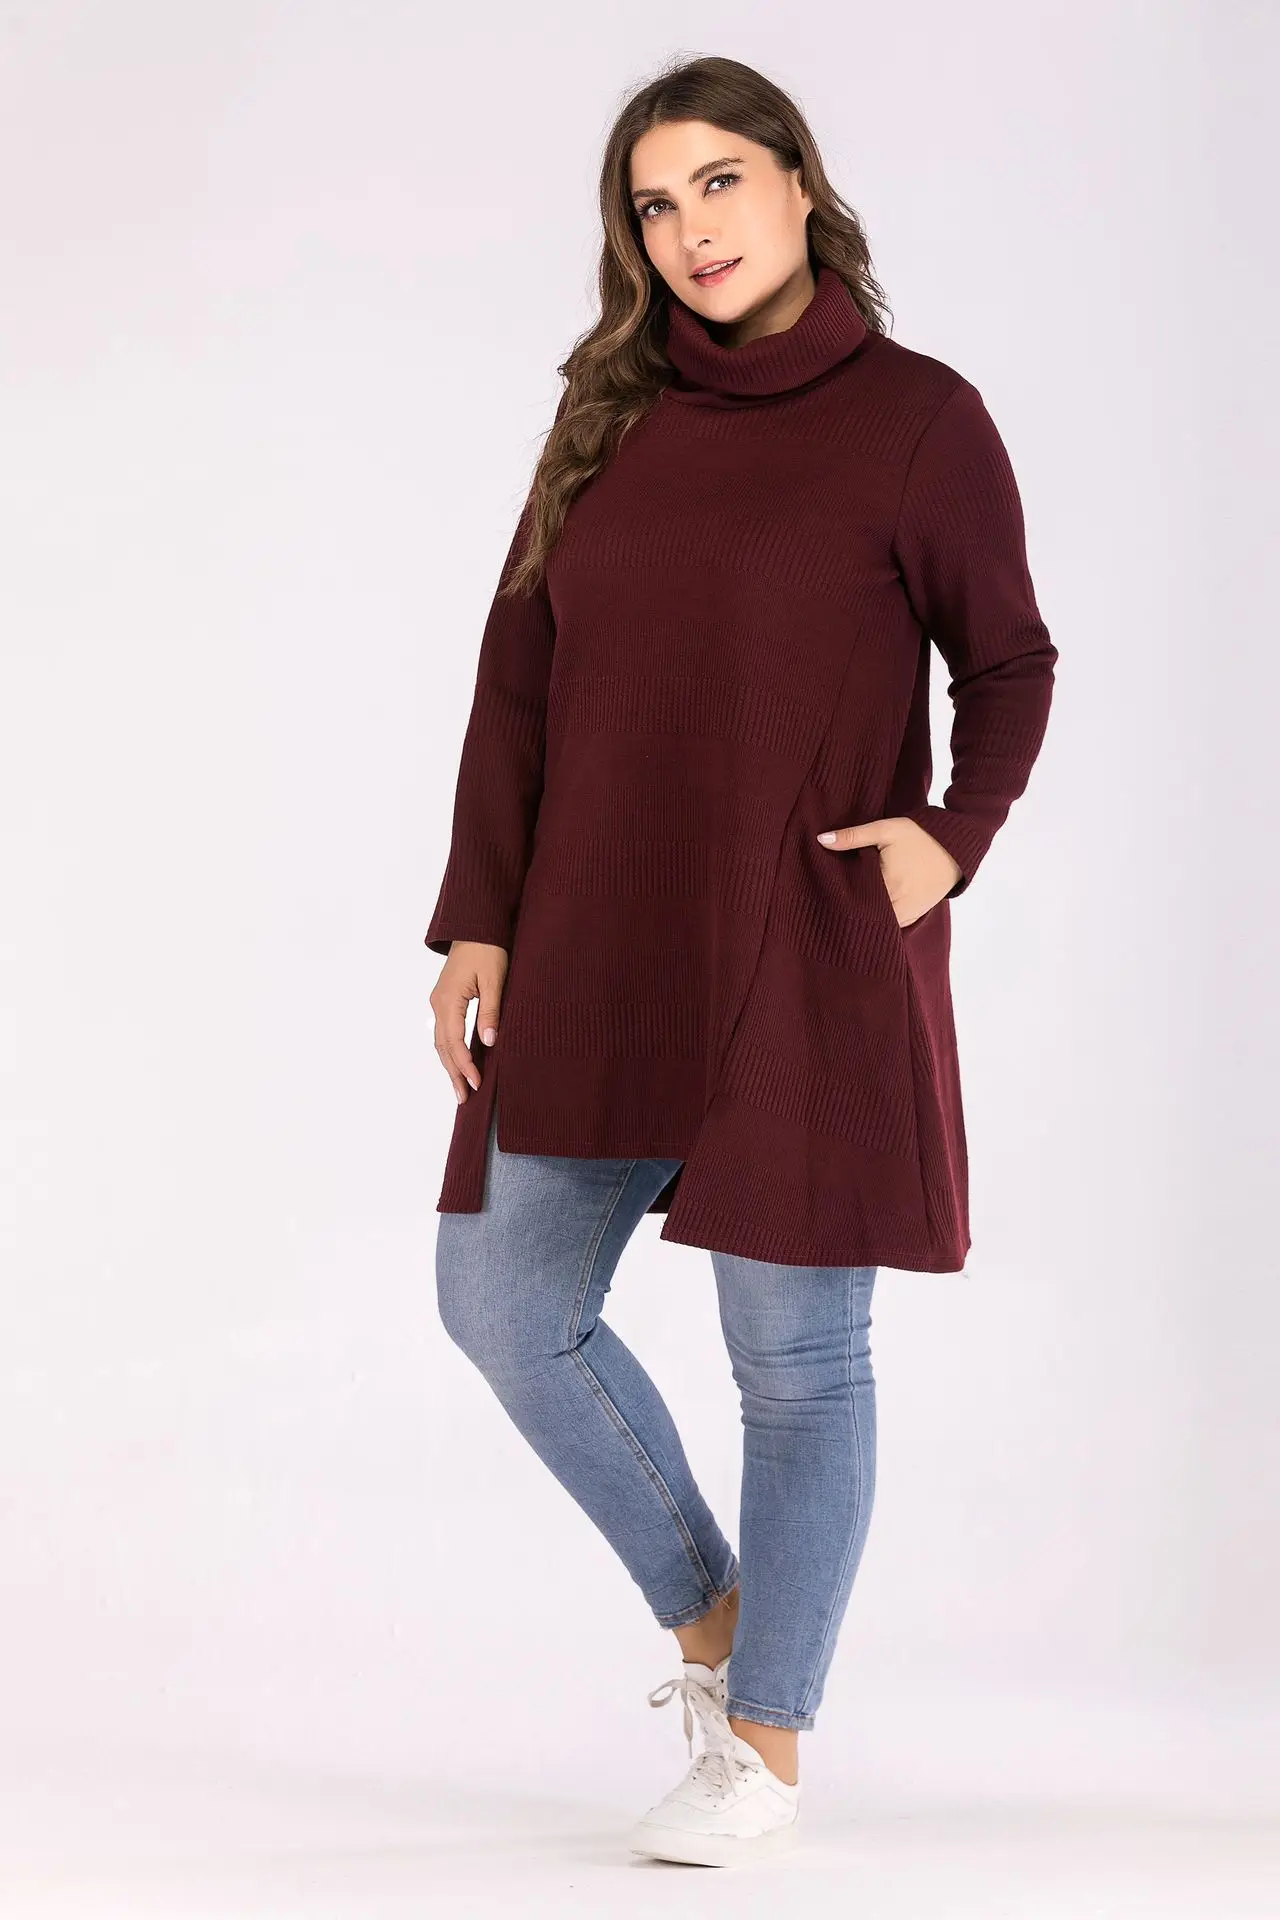 2019 XL Большой размер водолазка свитер женский пуловер негабаритный pull femme Плюс Размер Топы трикотаж длинный вязанный зимний свитер